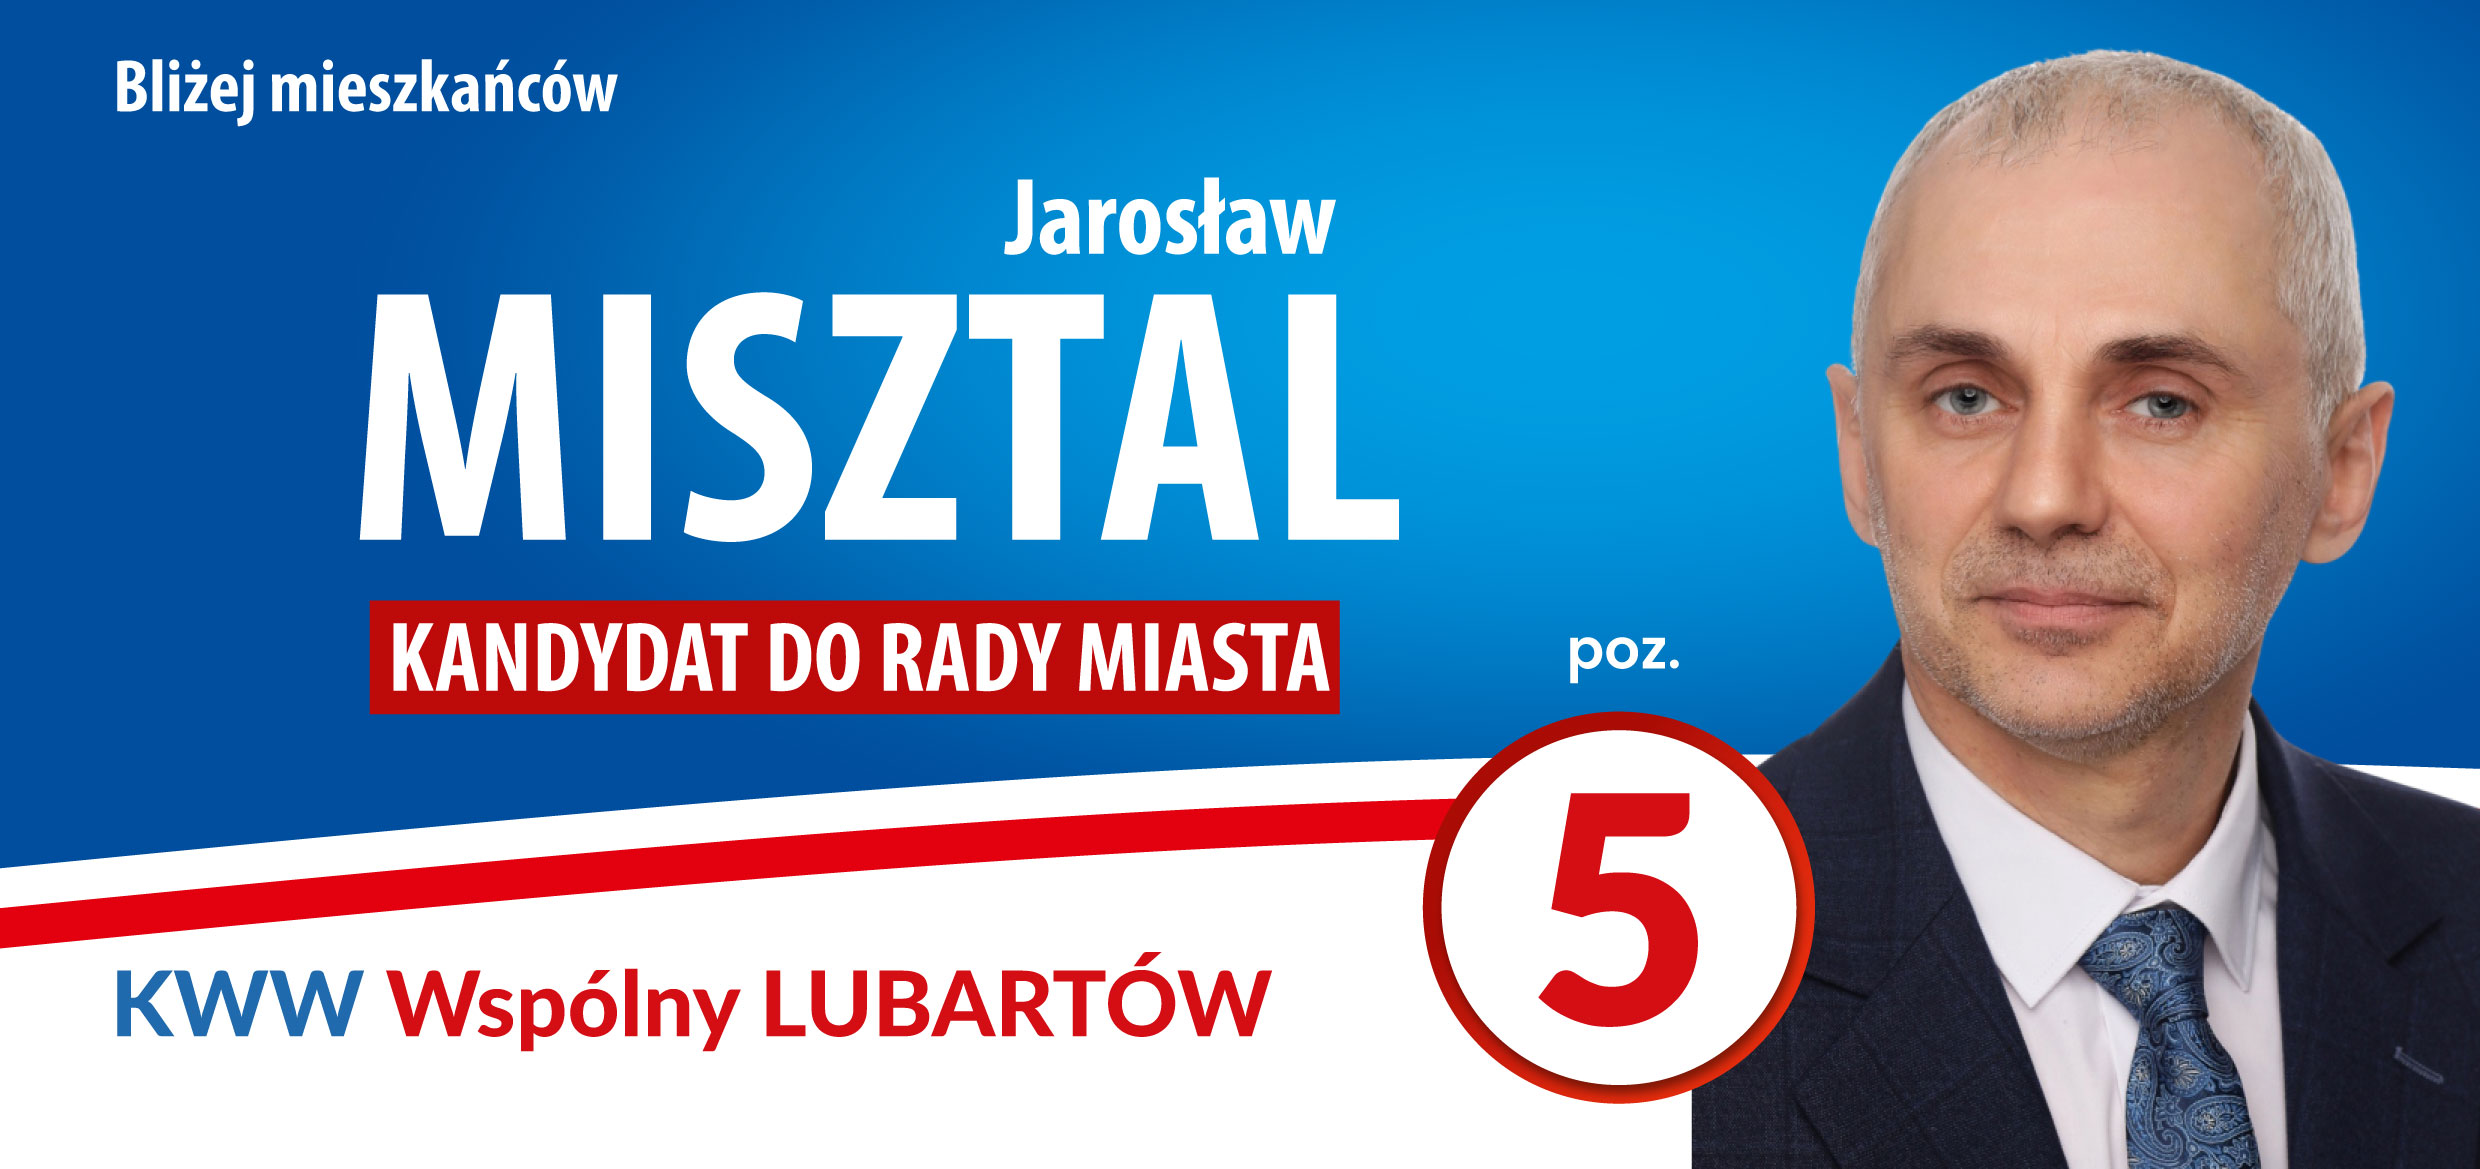 MIsztal_Jarosław-1